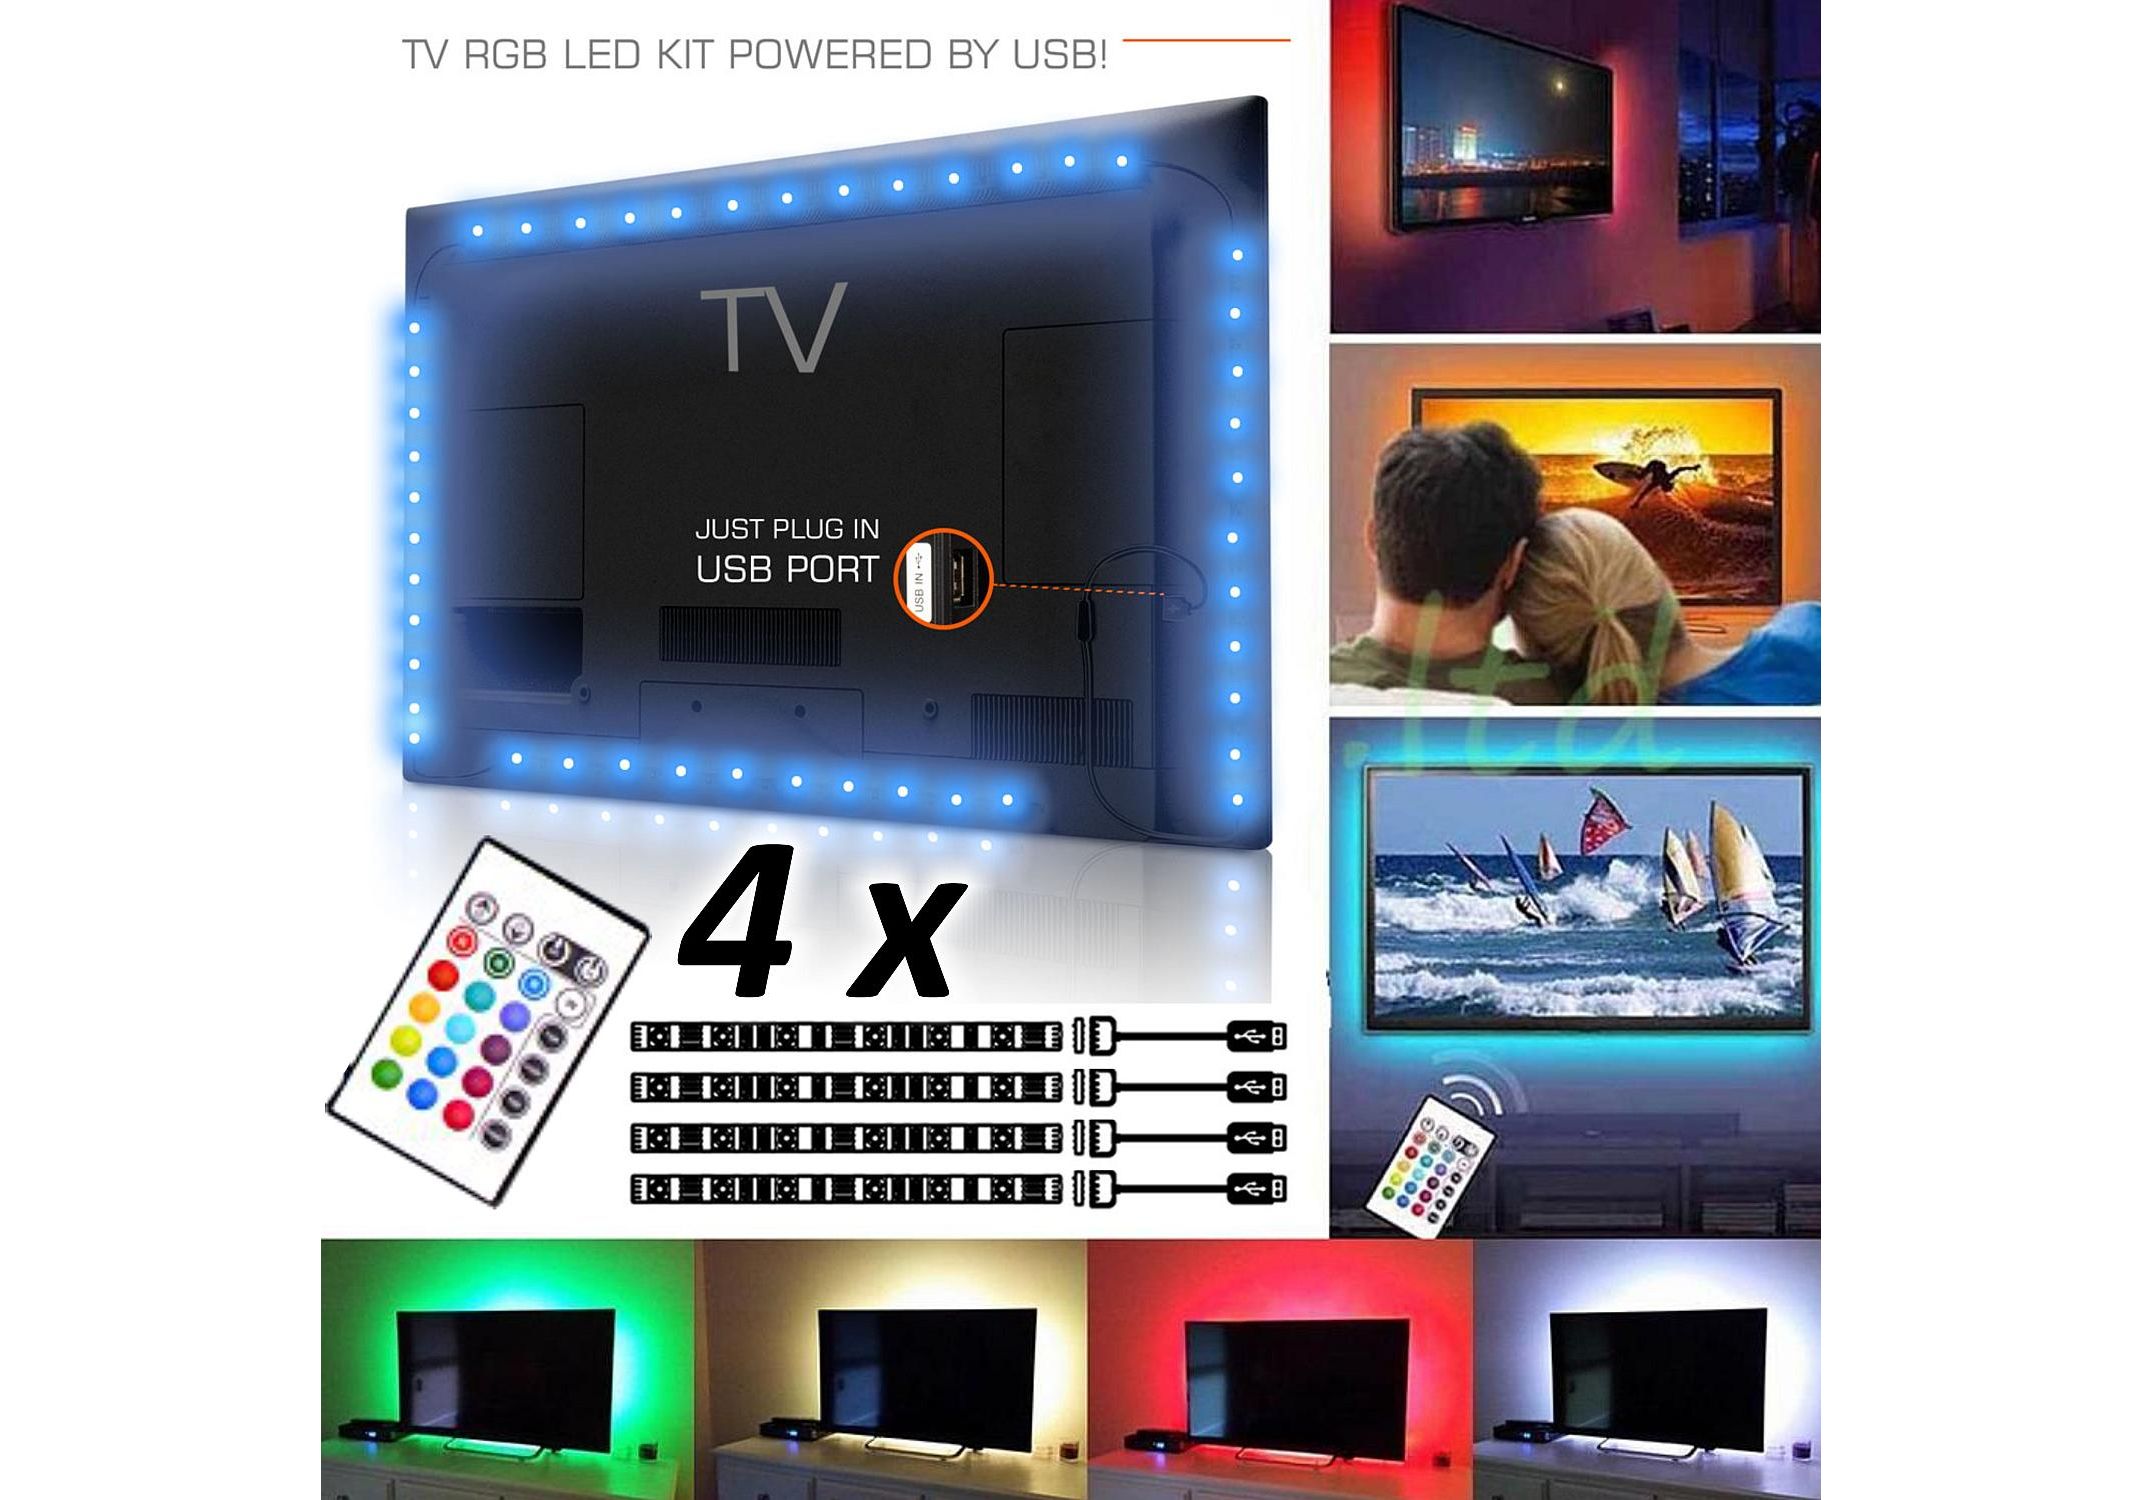 Kit Premium 4 x Banda LED USB pentru Iluminare Ambientala in Spatele Televizorului TV RGB, Model 4 Bucati cu Telecomanda mai complex magazin de produse auto - AutoLux